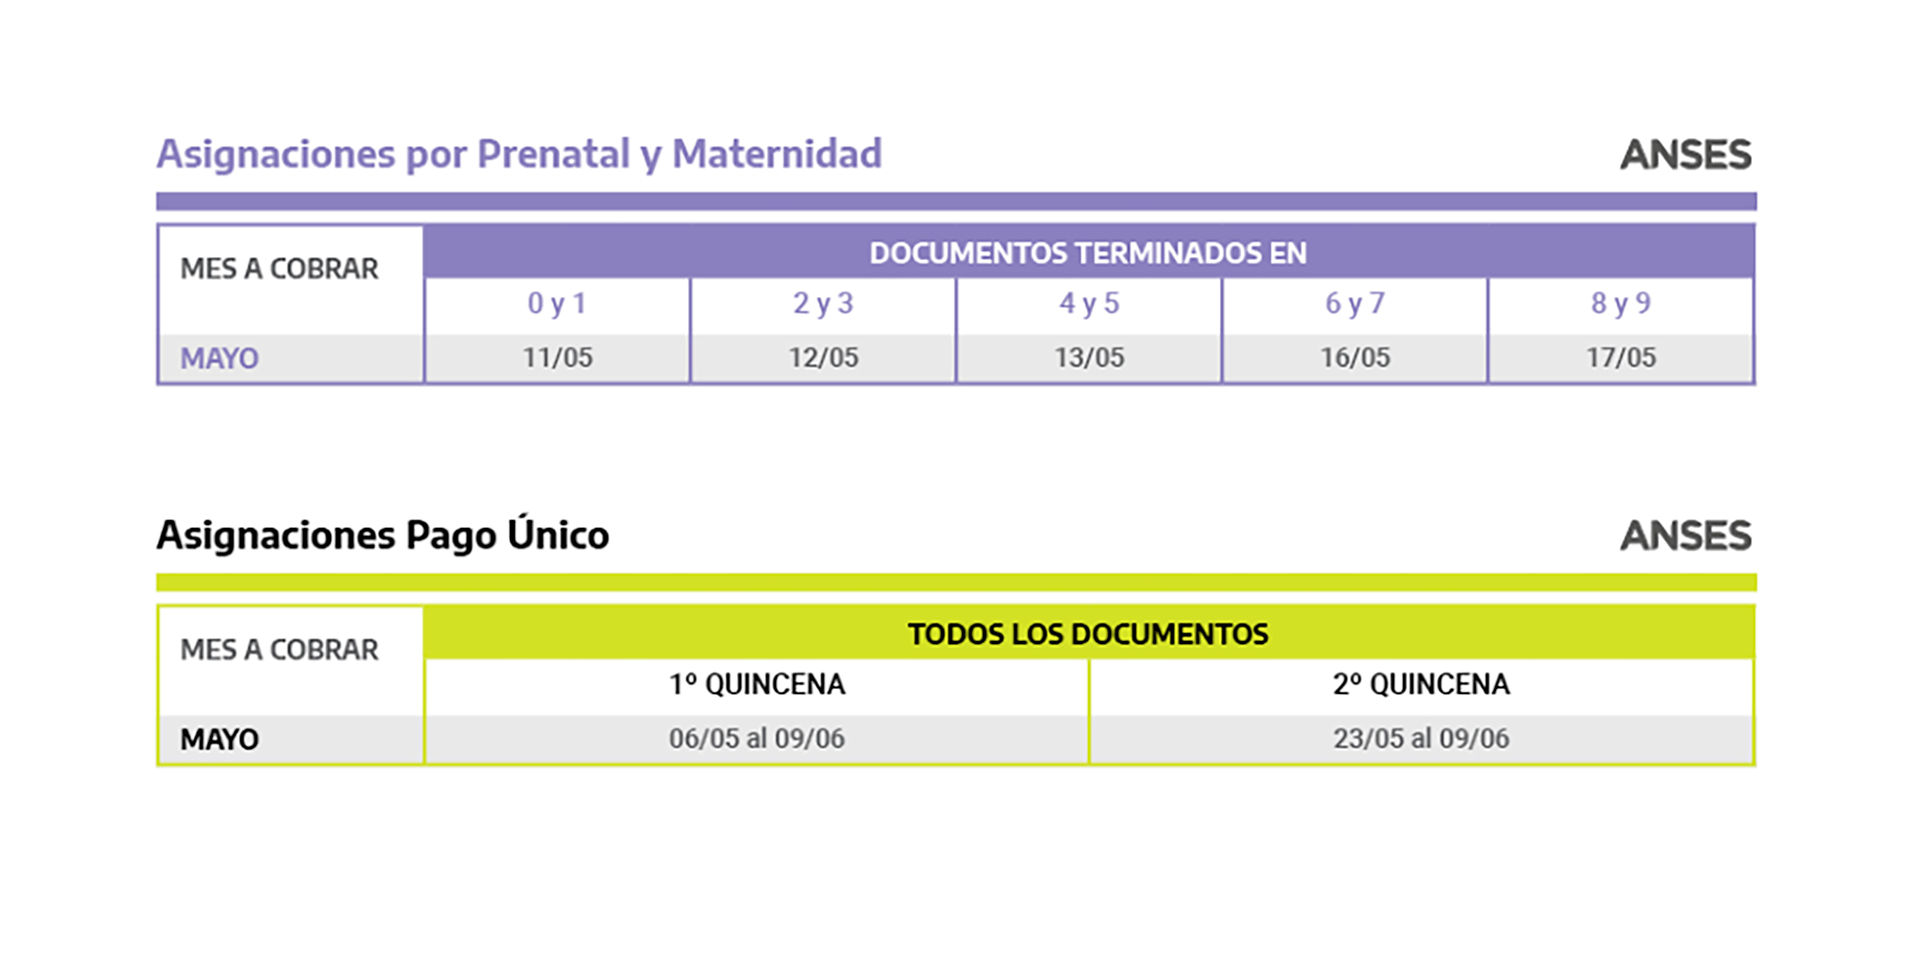 Las fechas, según documento, para perceptores de Asignación por Prenatal, Maternidad y de Pago Único